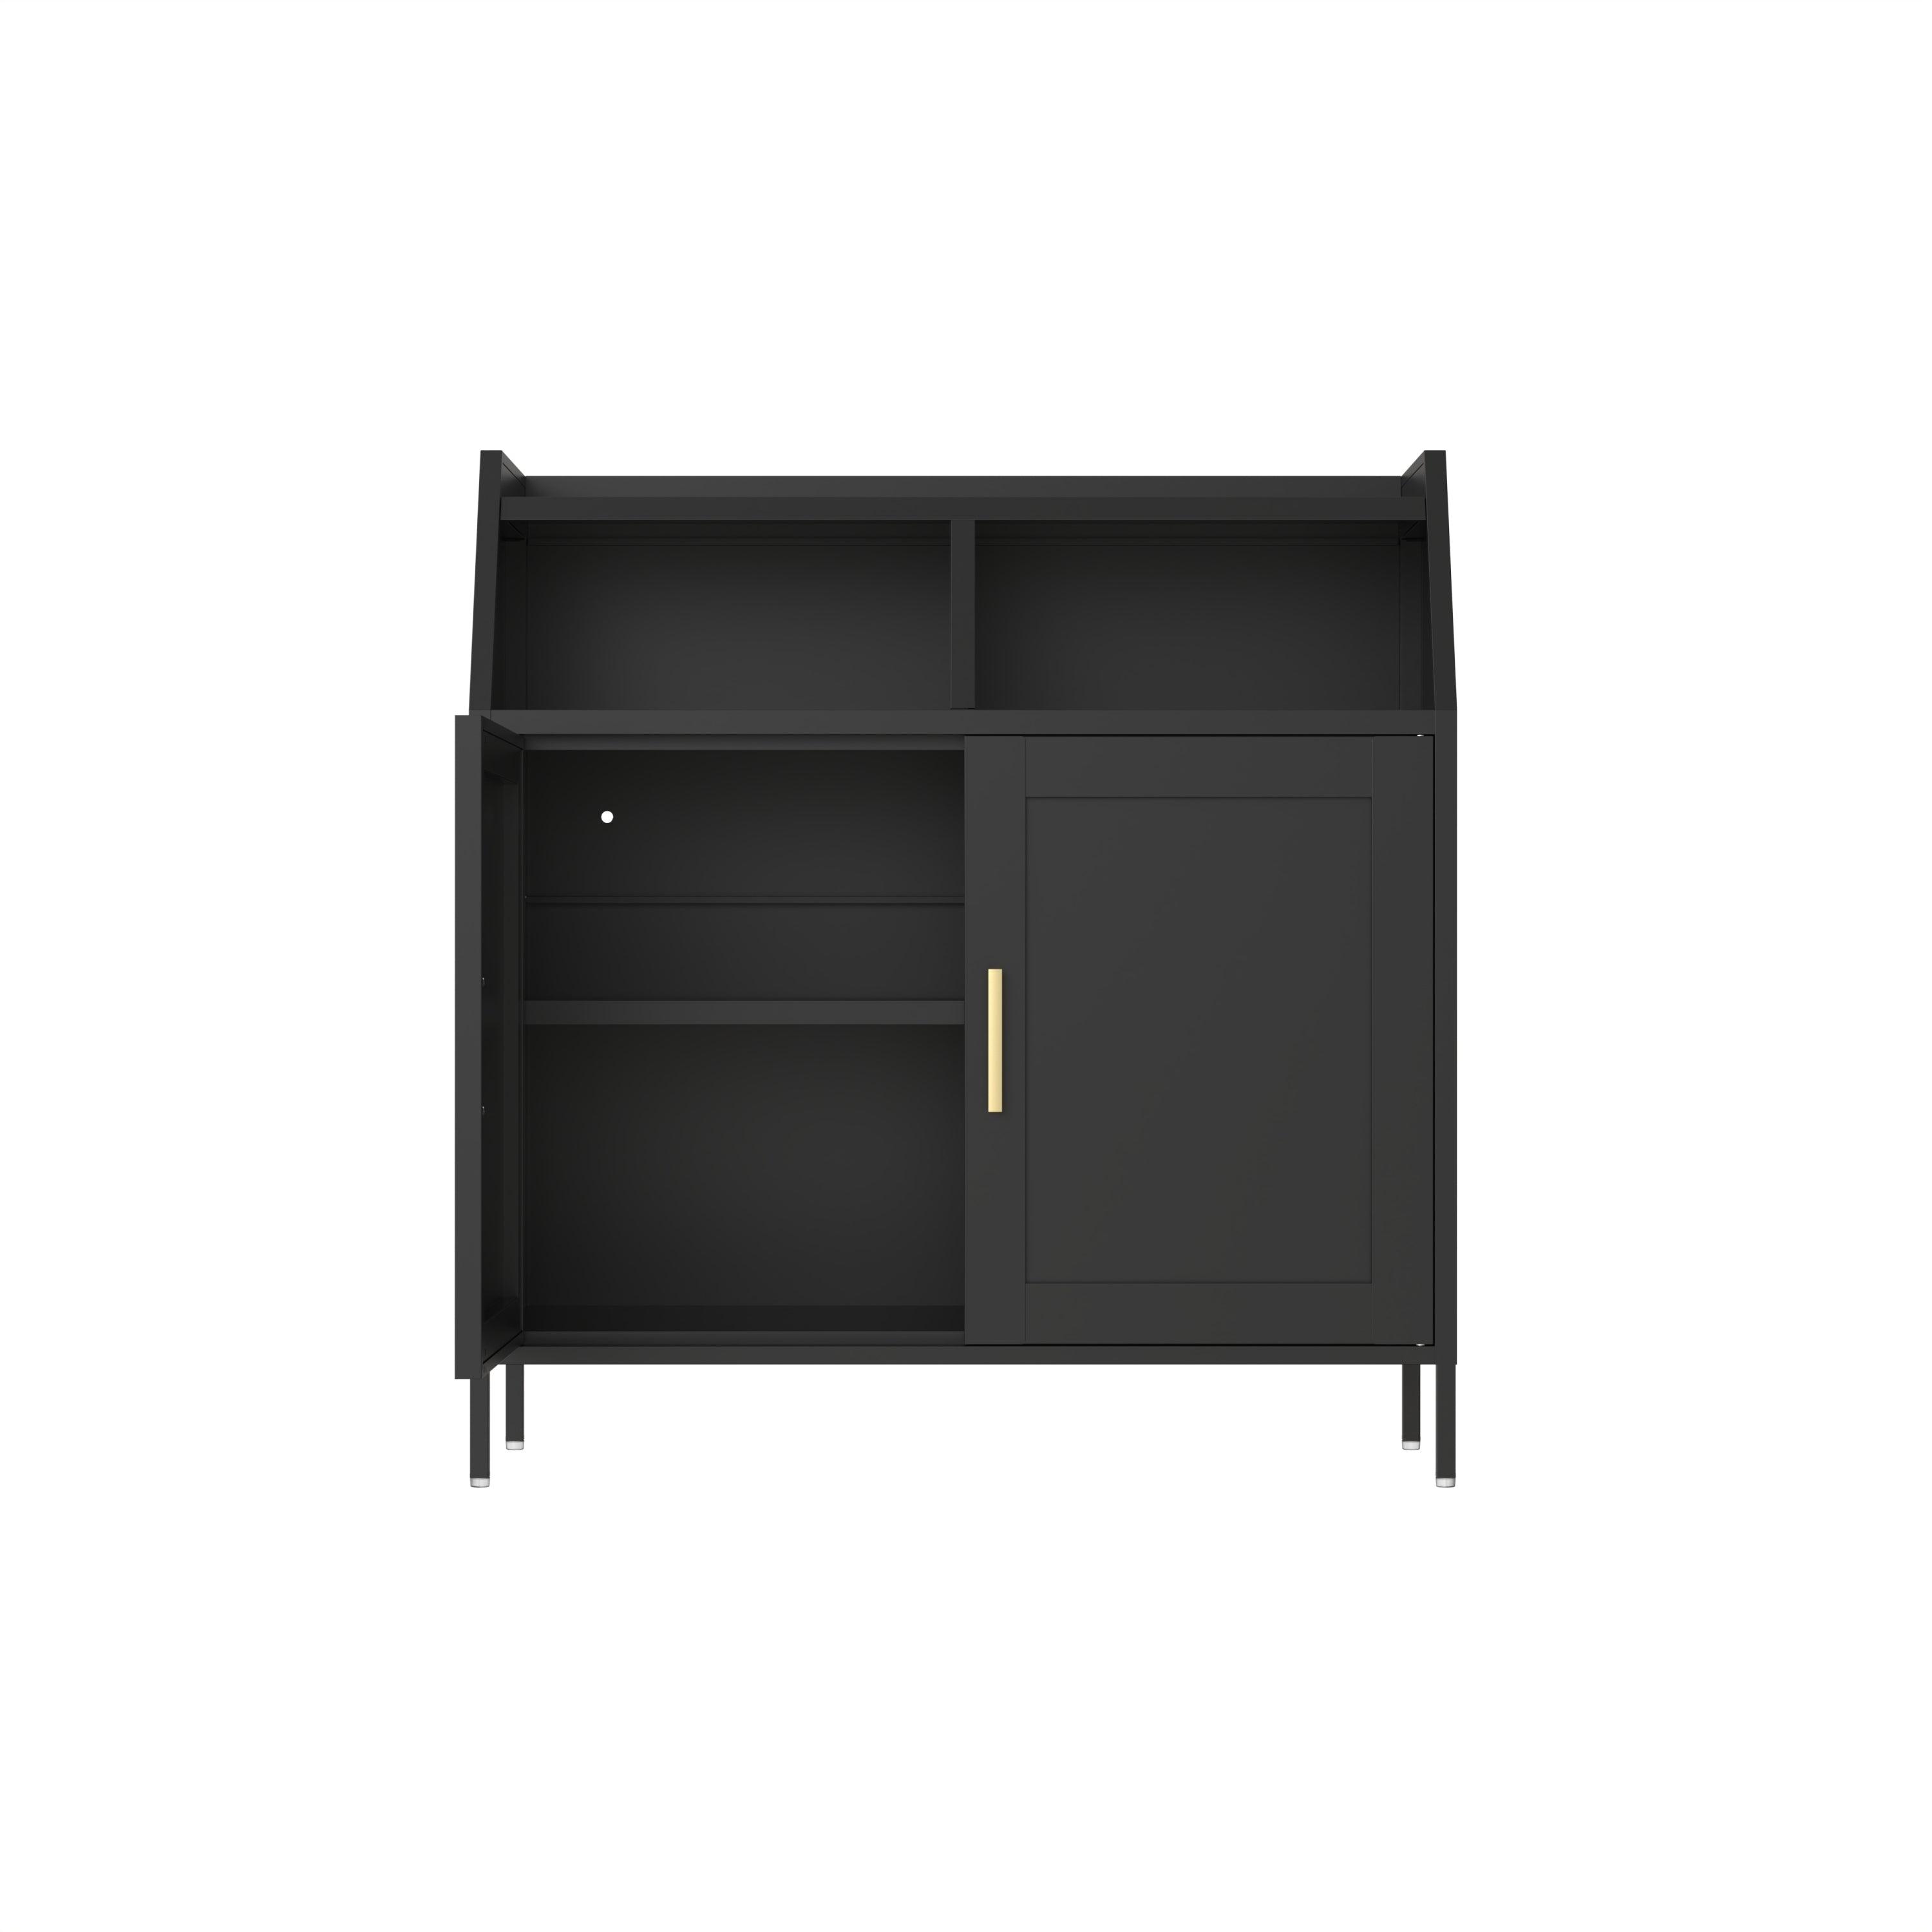 2 Door Metal Buffet Sideboard Cabinet With Shelf Storage - Black LamCham